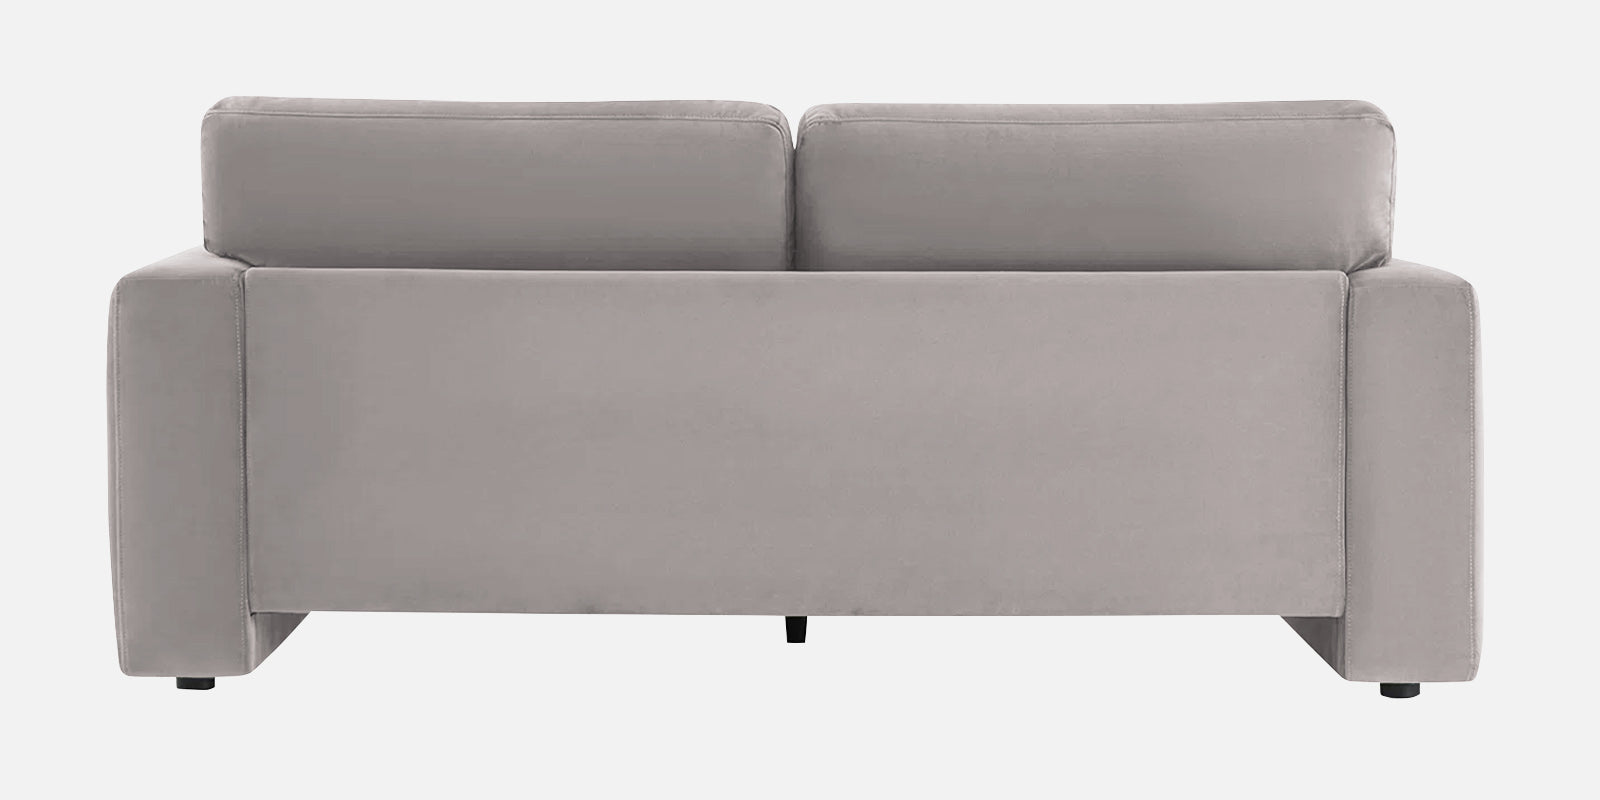 Kosta Velvet 2 Seater Sofa in Pearl Grey Colour